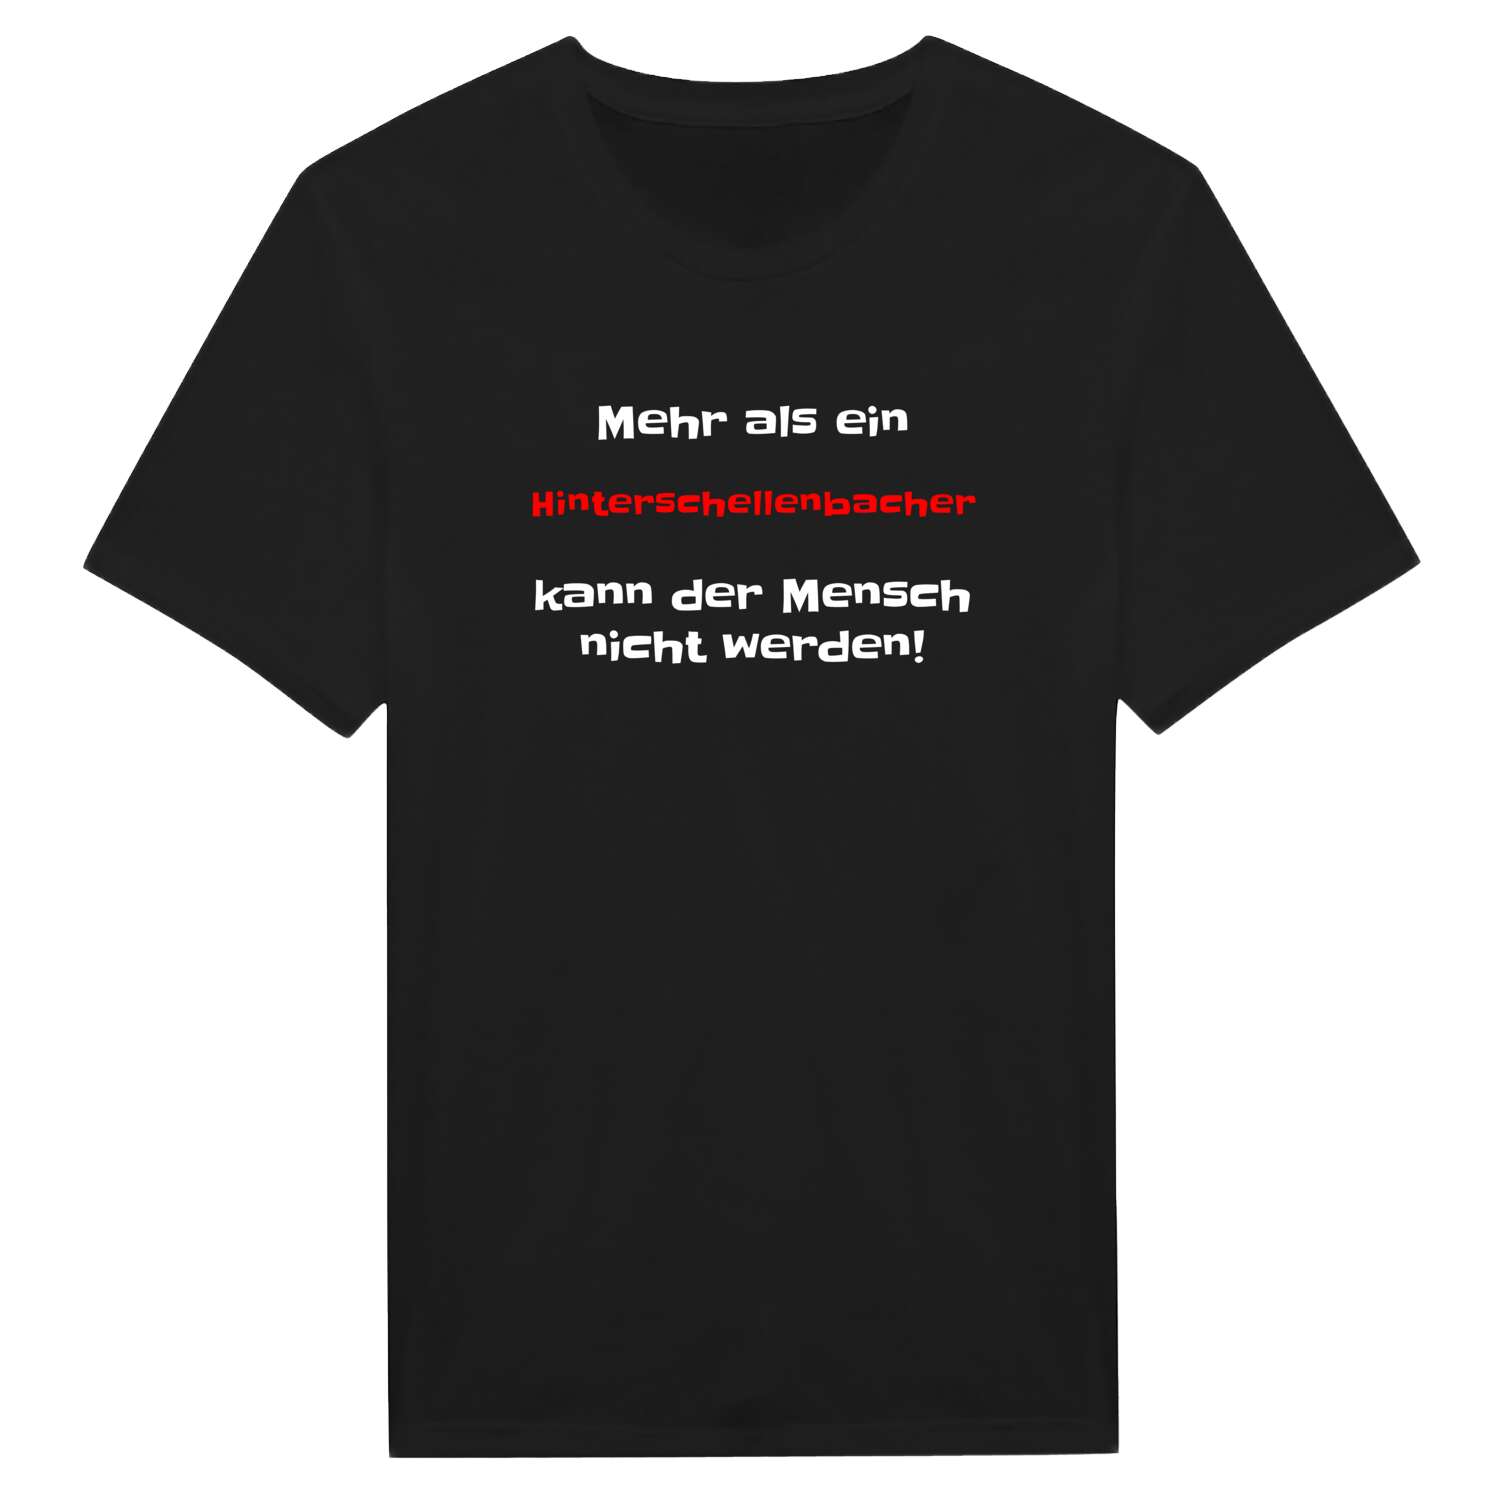 Hinterschellenbach T-Shirt »Mehr als ein«